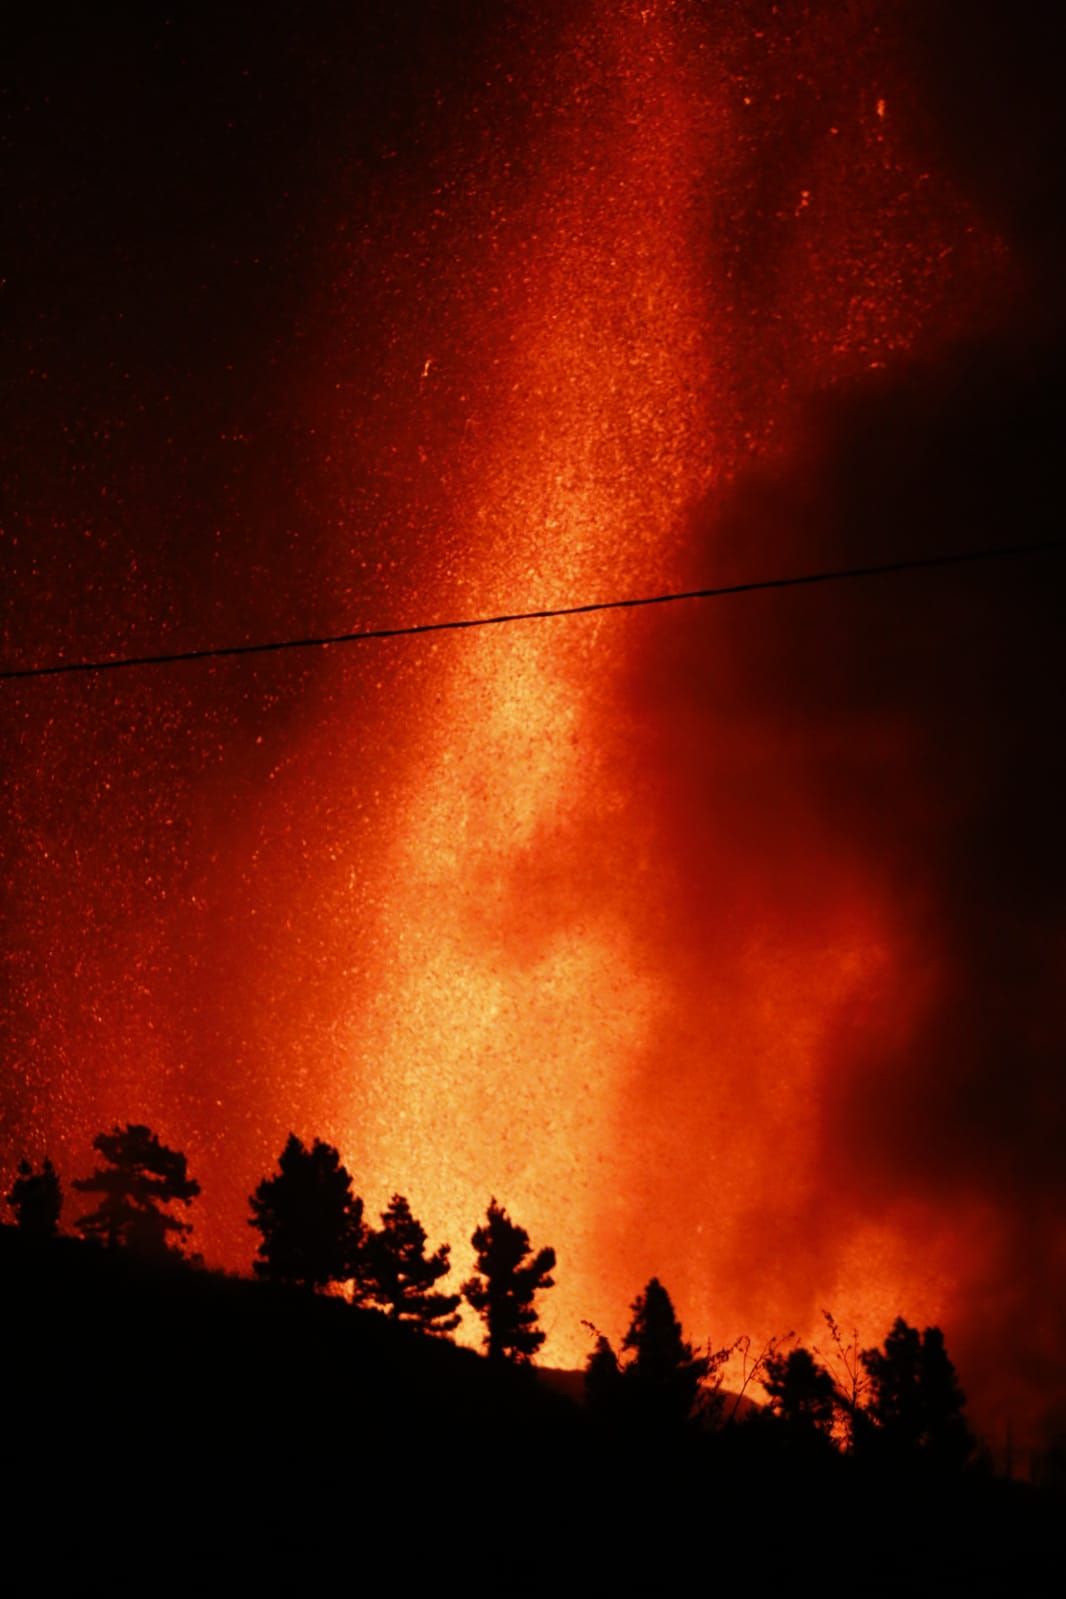 Erupción volcánica: la lava de noche